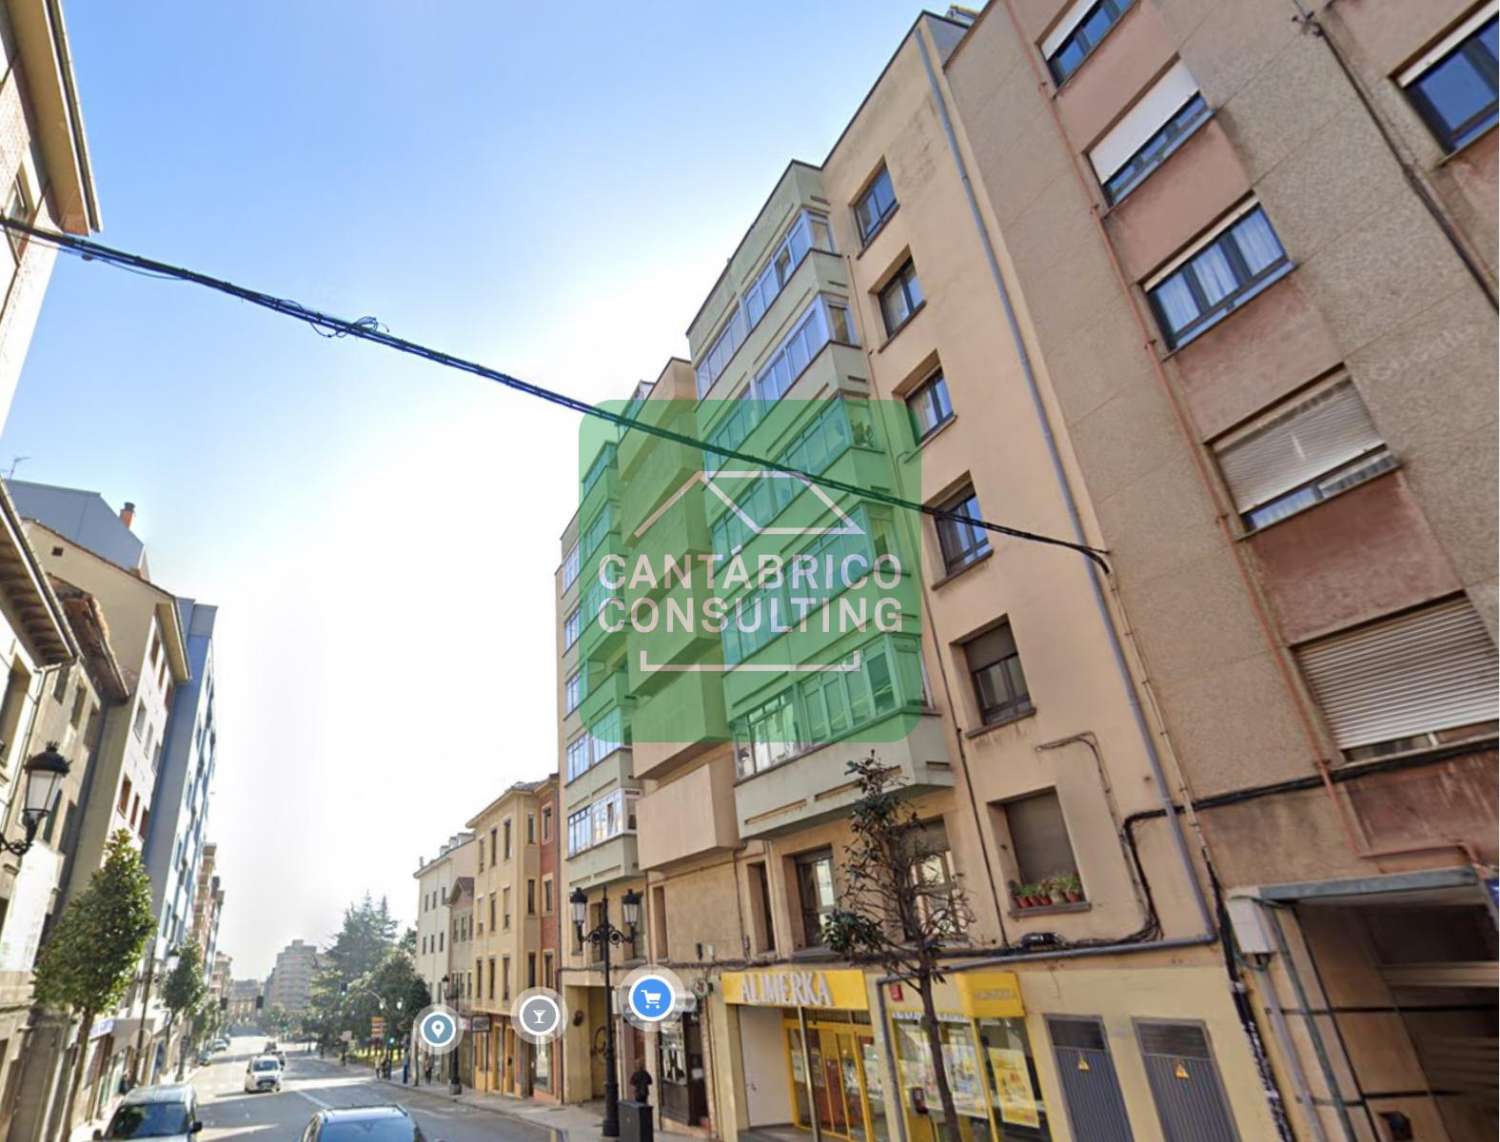 Pis en venda in Oviedo